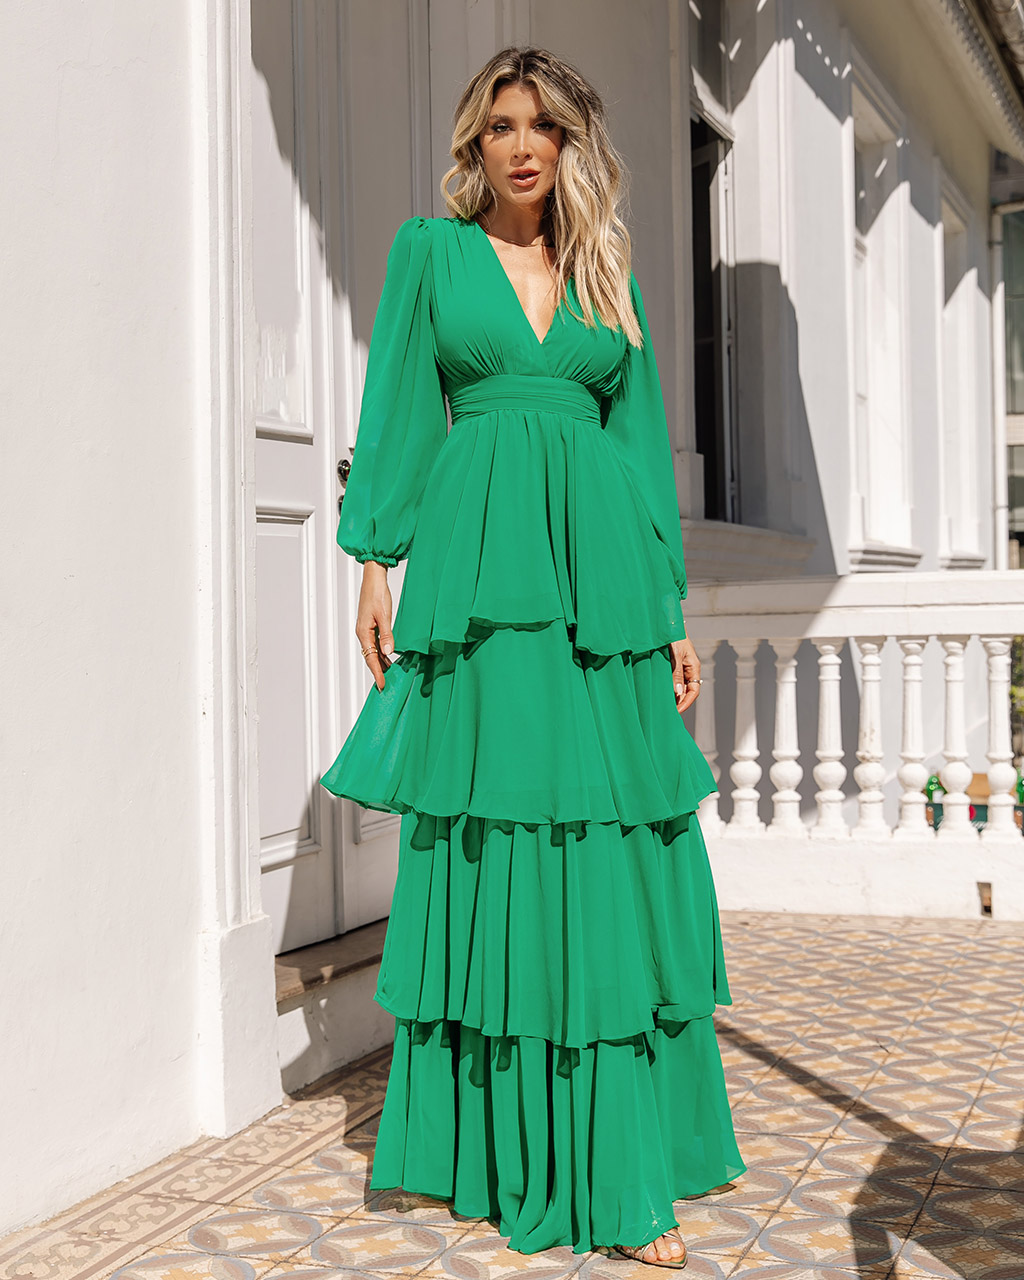 Vestido Longo Verde Fatima - Empório NM